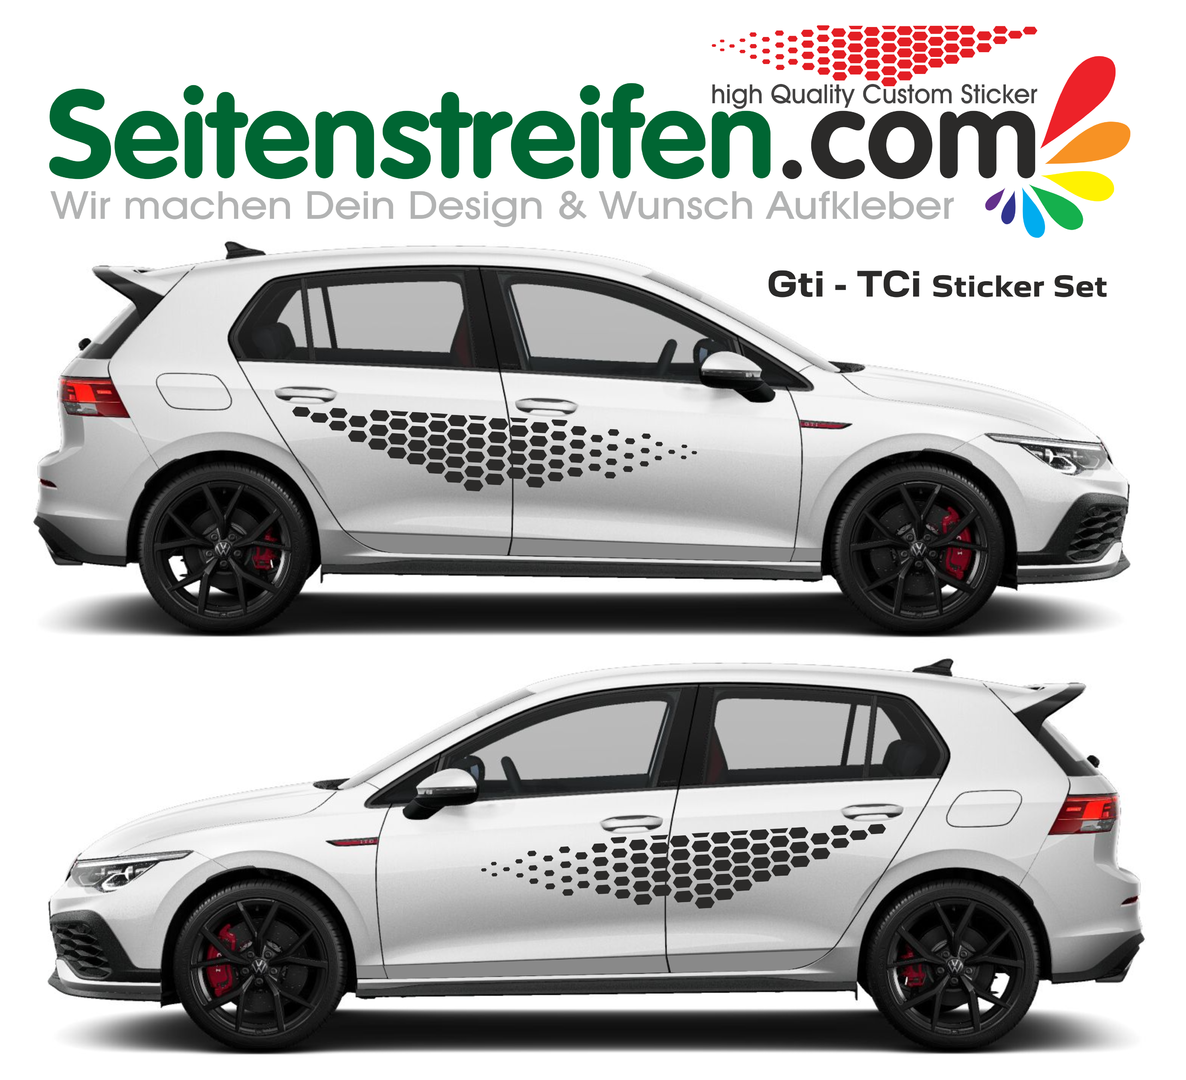 VW Golf GTi - TCi Wabenmuster Seitenstreifen Aufkleber Dekor Set - 8411